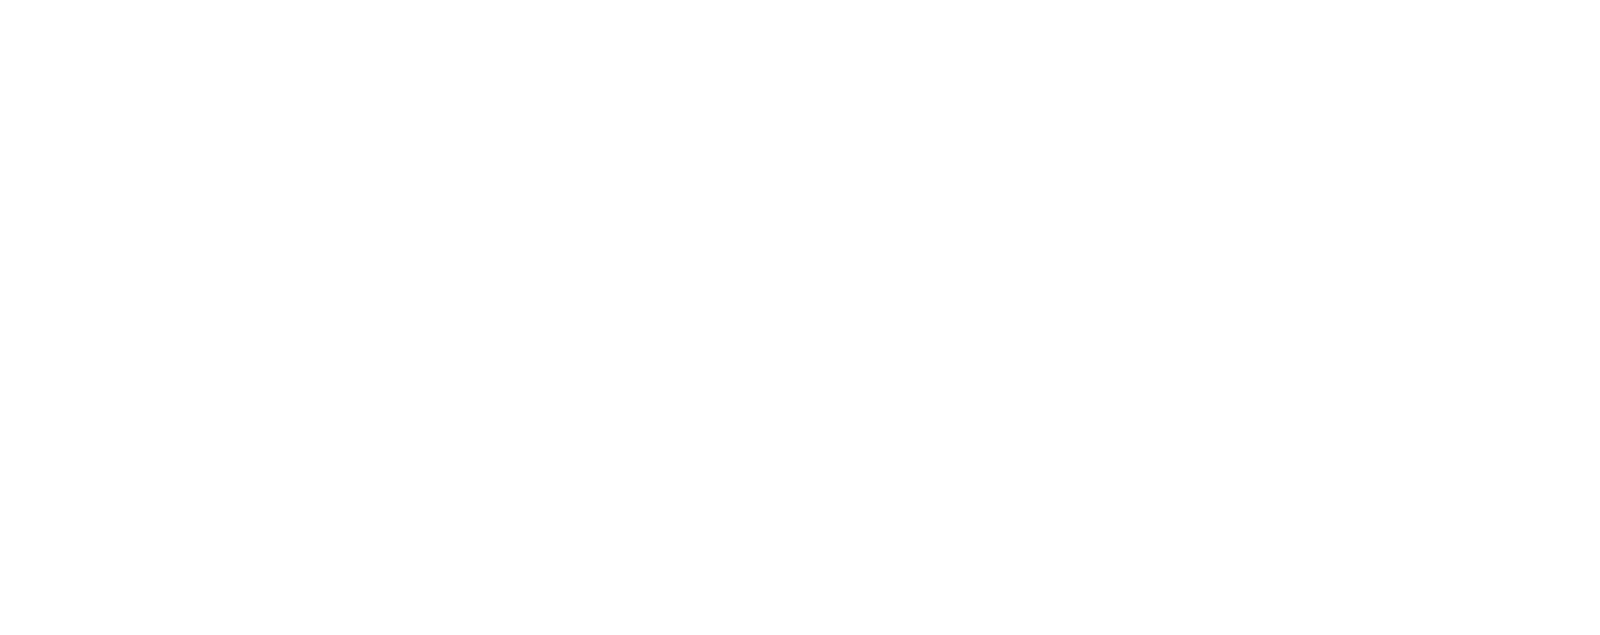 Zeichnungen, die die Abmessungen des Aeron Stuhls veranschaulichen. Größe B, mittel, ist insgesamt 934 – 1098 mm hoch, 673 mm breit und 432 mm tief. Größe C, groß, ist insgesamt 984 – 1153 mm hoch, 701 mm breit und 470 mm tief.